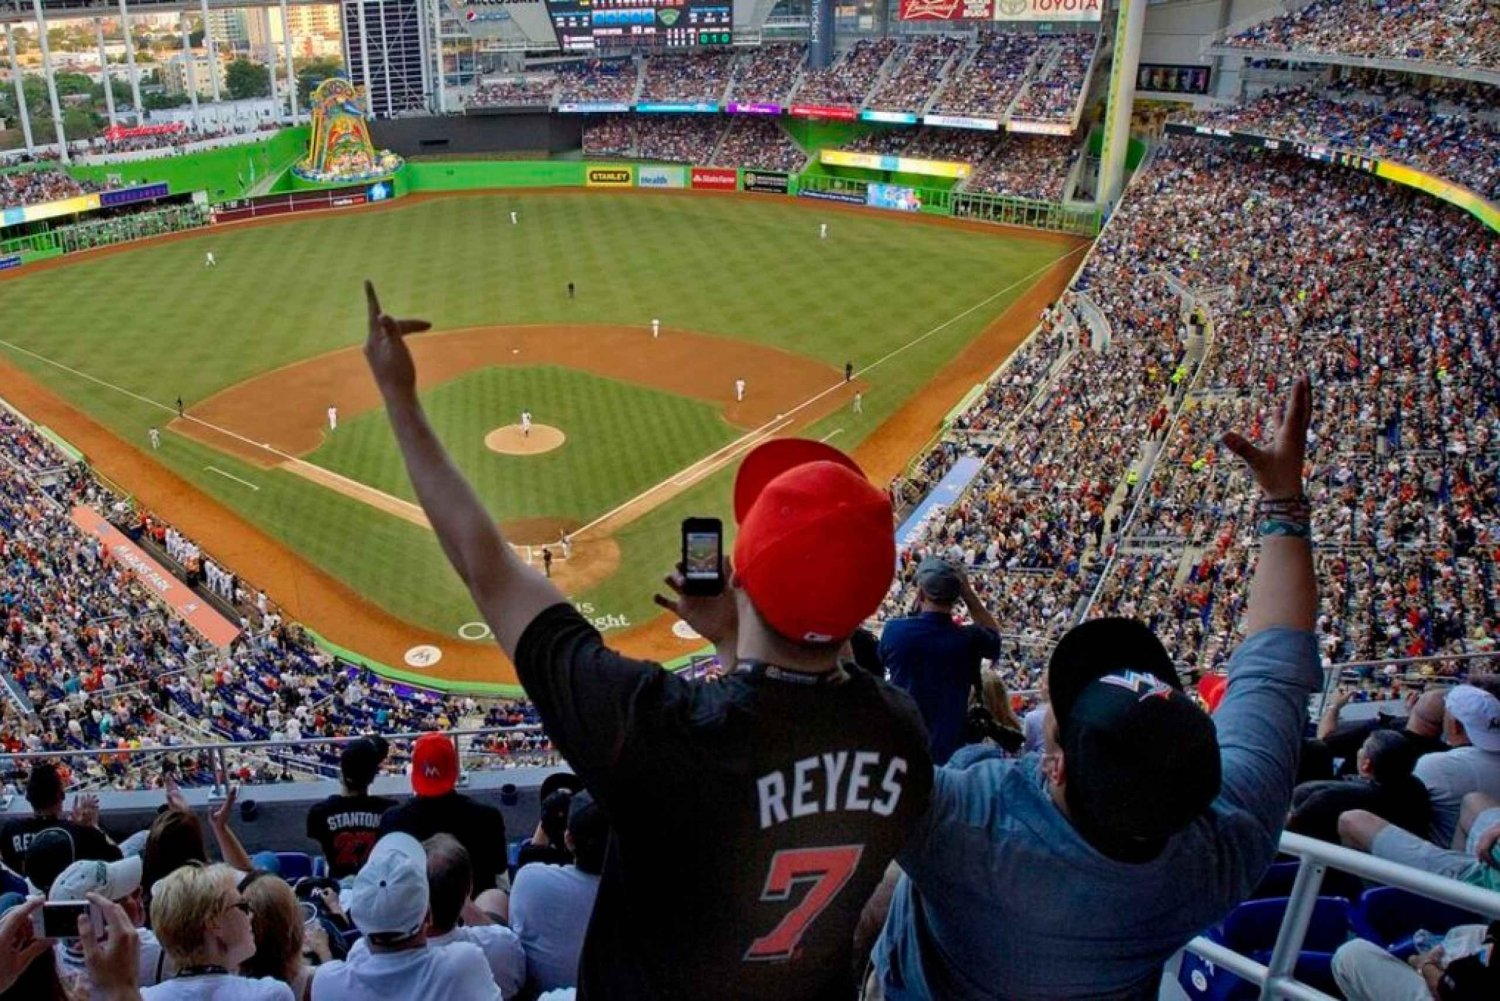 Miami : Billet pour le match de baseball des Marlins de Miami au parc loandepot